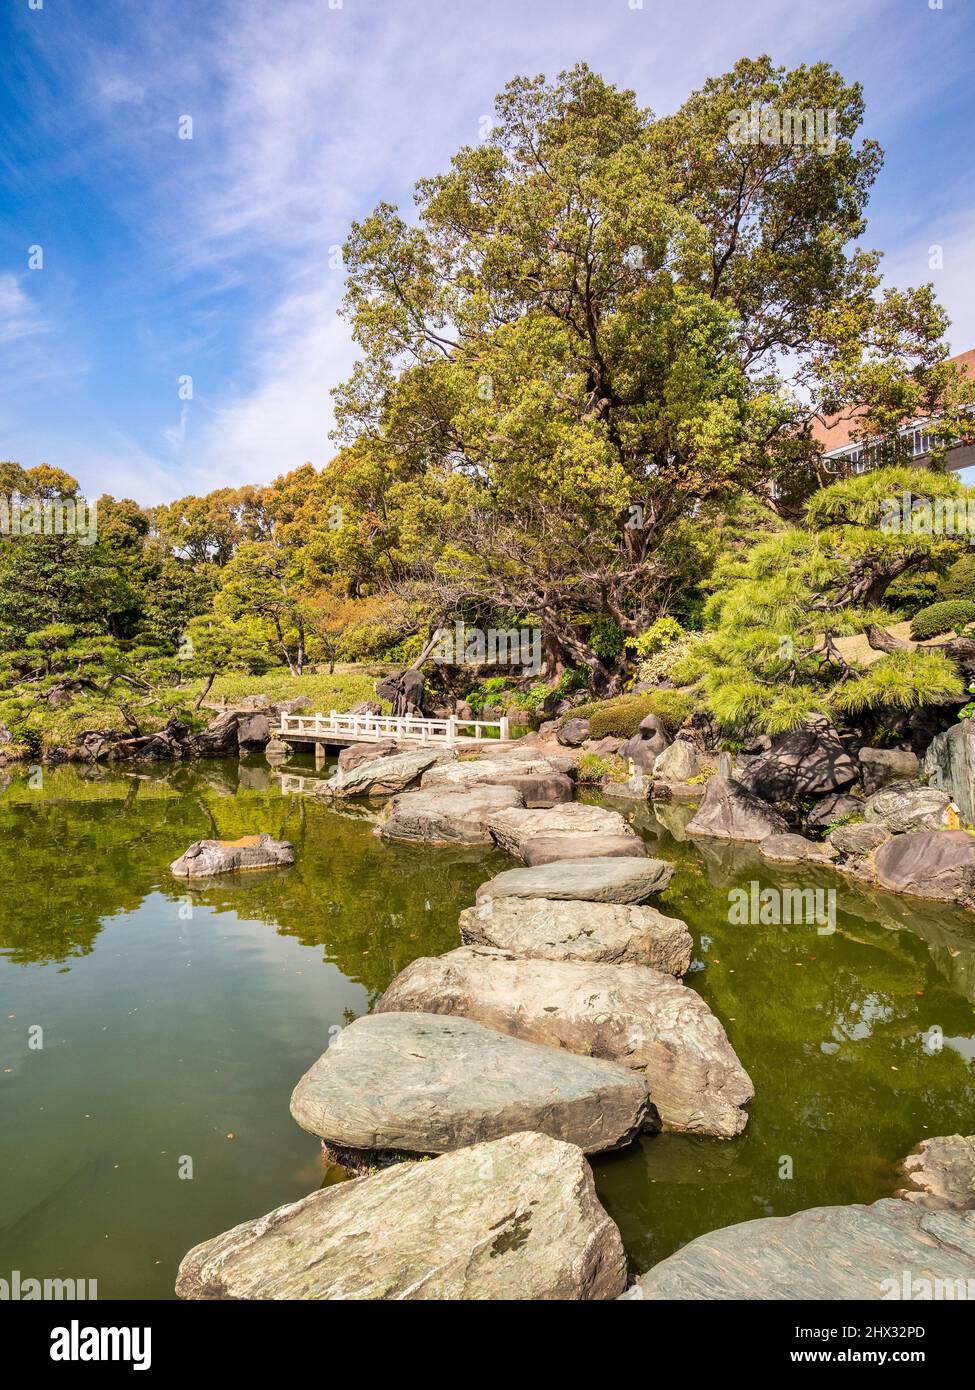 9 de abril de 2019: Tokio, Japón - Jardín Kiyosumi, pisando piedras en el lago. Foto de stock